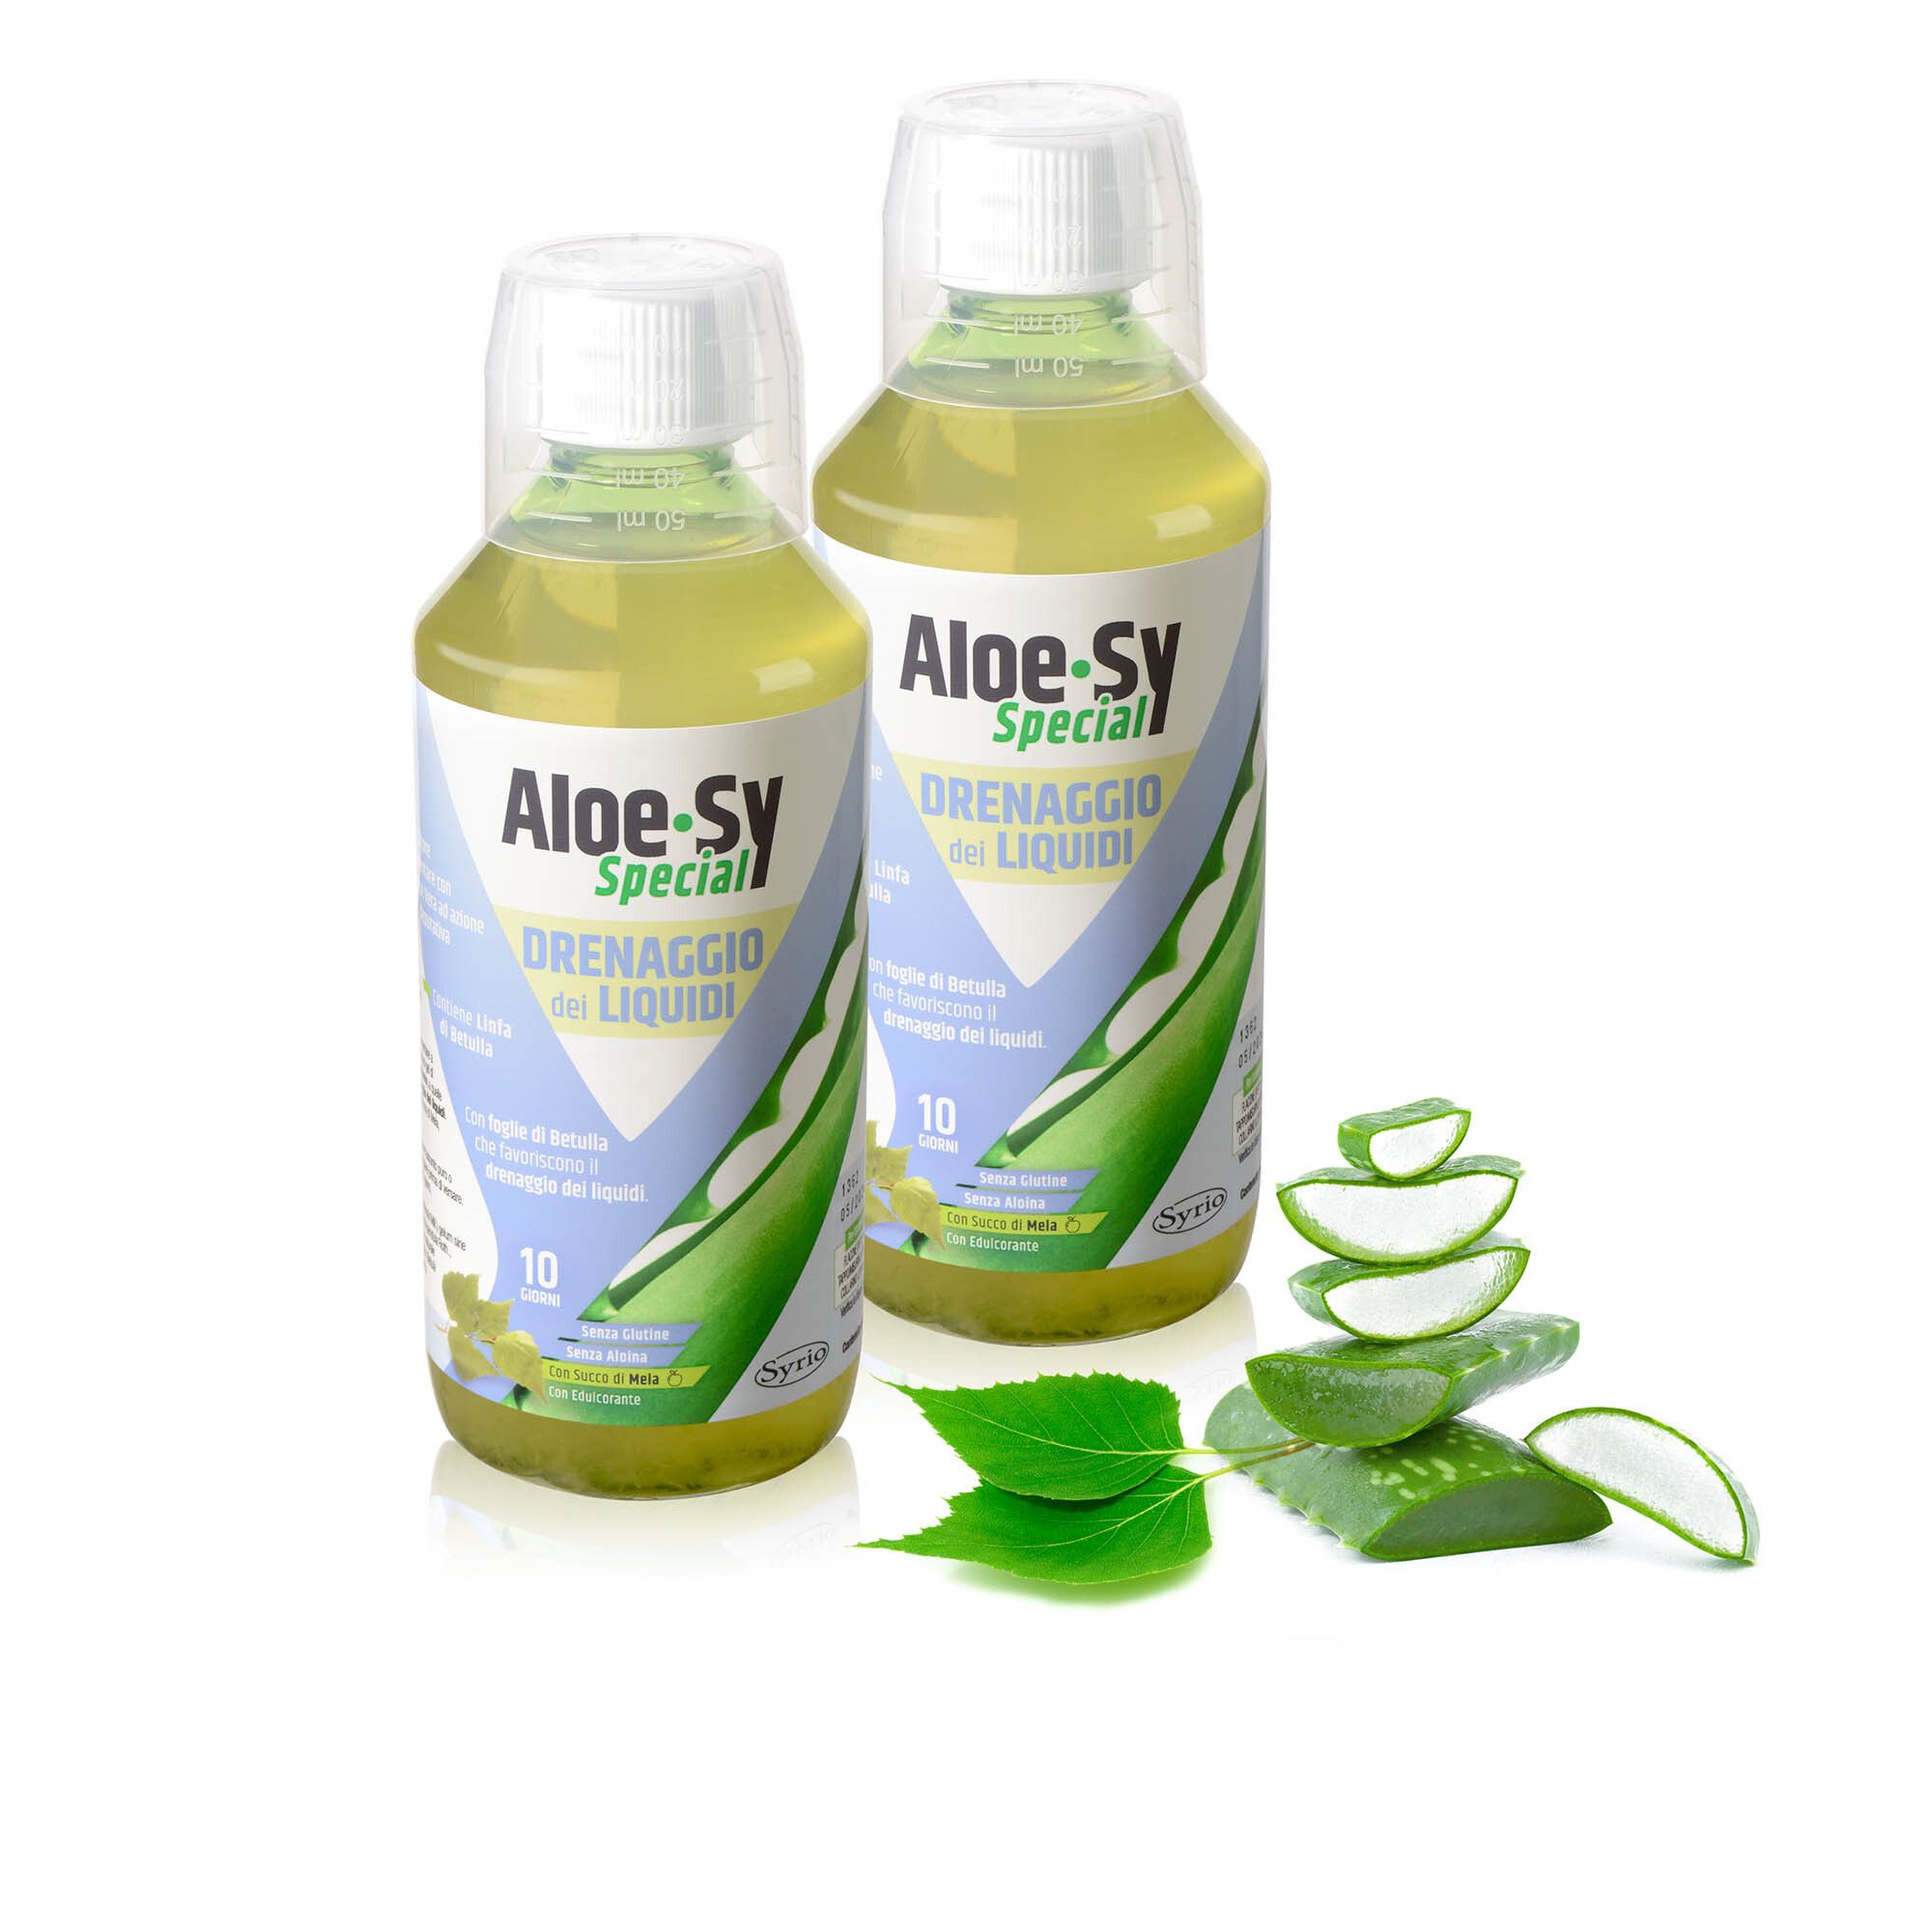 Image of Aloe-Sy Special drenaggio liquidi, integratore (2 pz)